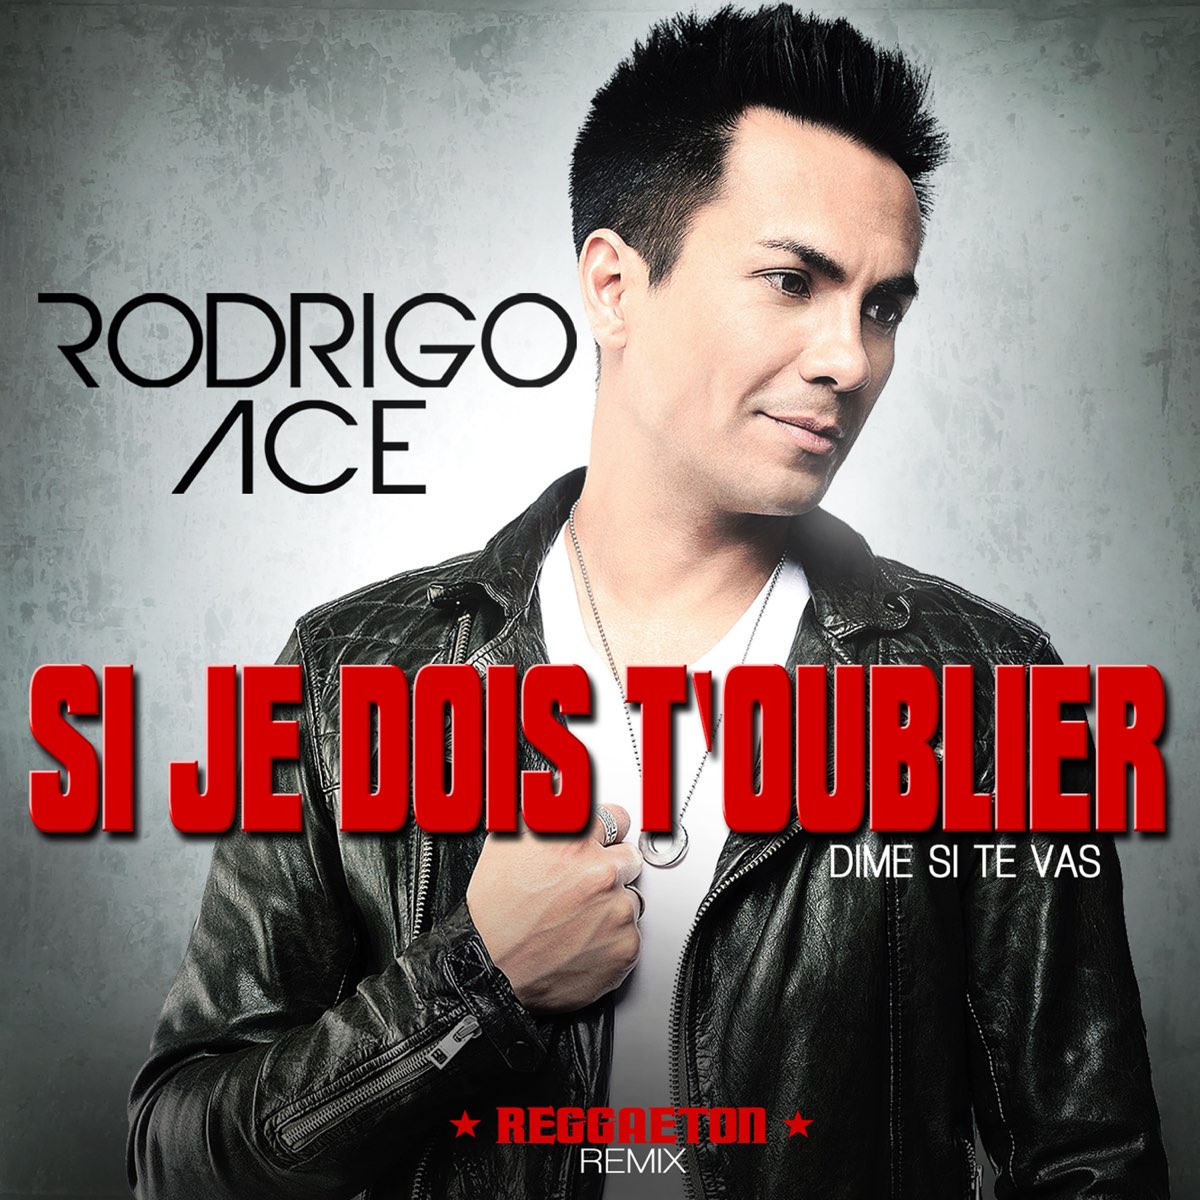 Si je dois t'oublier (Dime si te vas) [Reggaeton Remix] - Single” álbum de  Rodrigo Ace en Apple Music